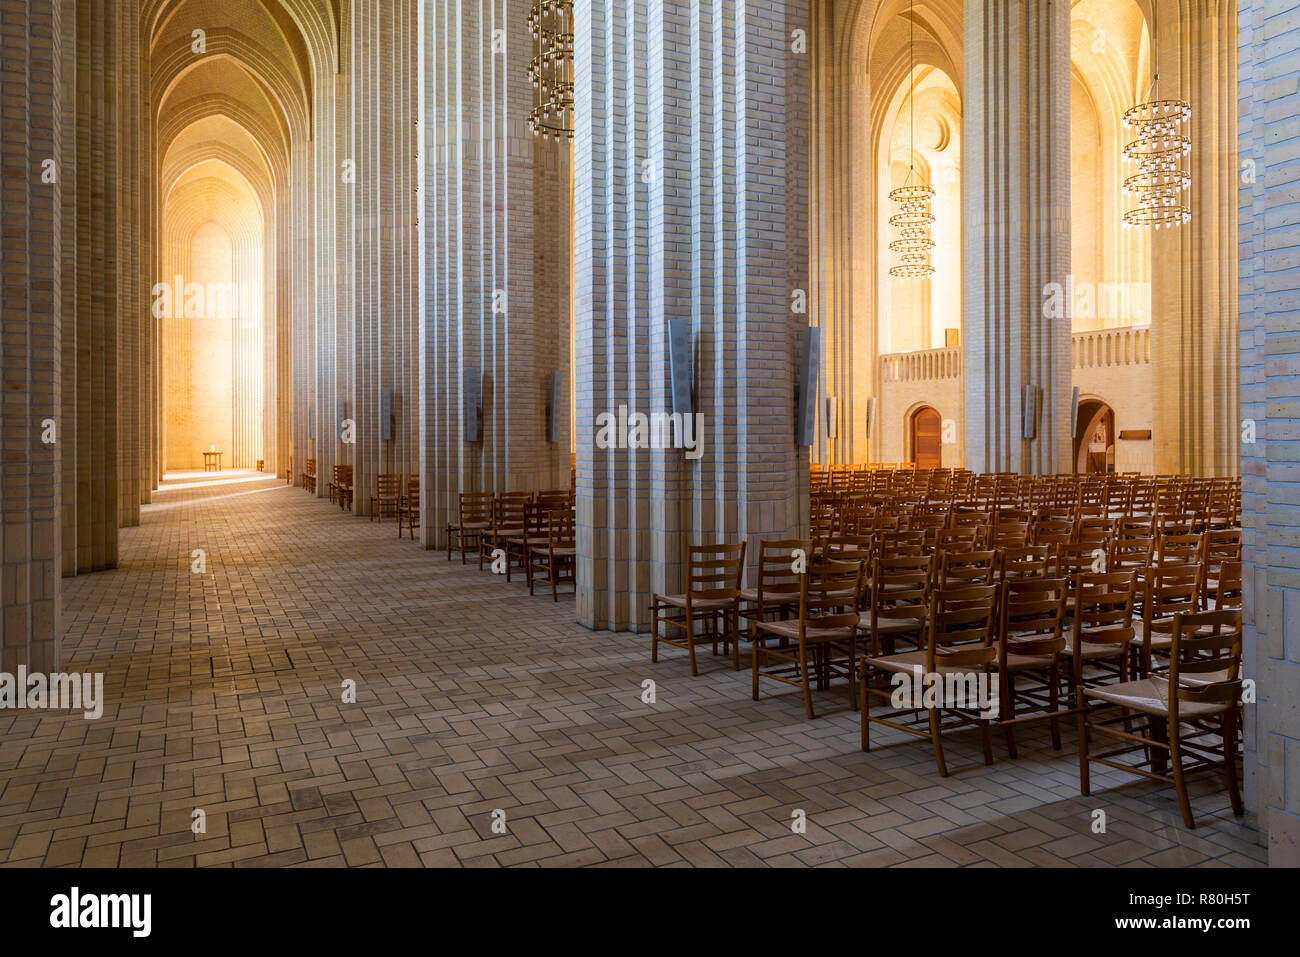 Copenhague, Dinamarca - 18 de septiembre de 2018: Interior de la iglesia (Grundtvigs kirke) con pilares de ladrillo y la luz del sol. Foto de stock